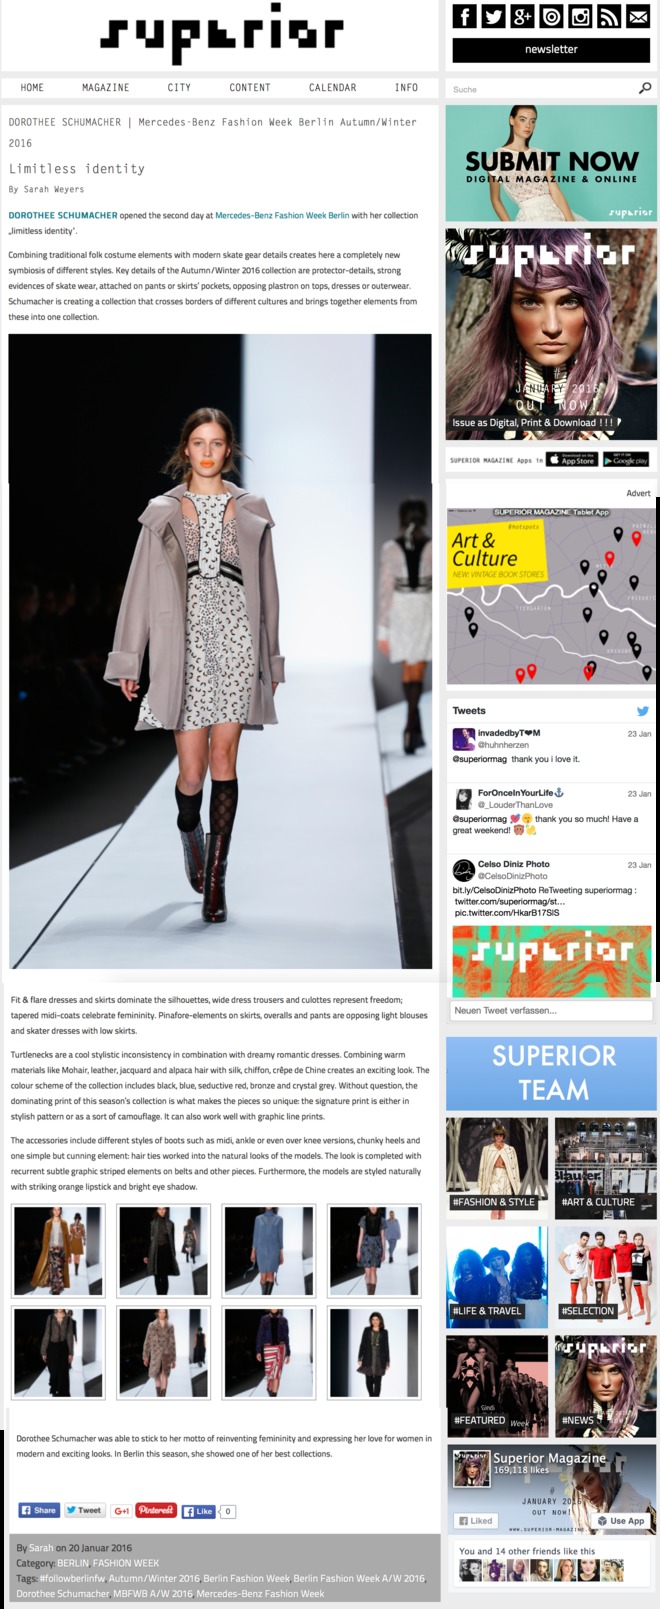 SUPERIOR MAGAZINE Mercedes Benz Fashion Week Berlin a/w 16/17 Dorothee Schumacher Show Report